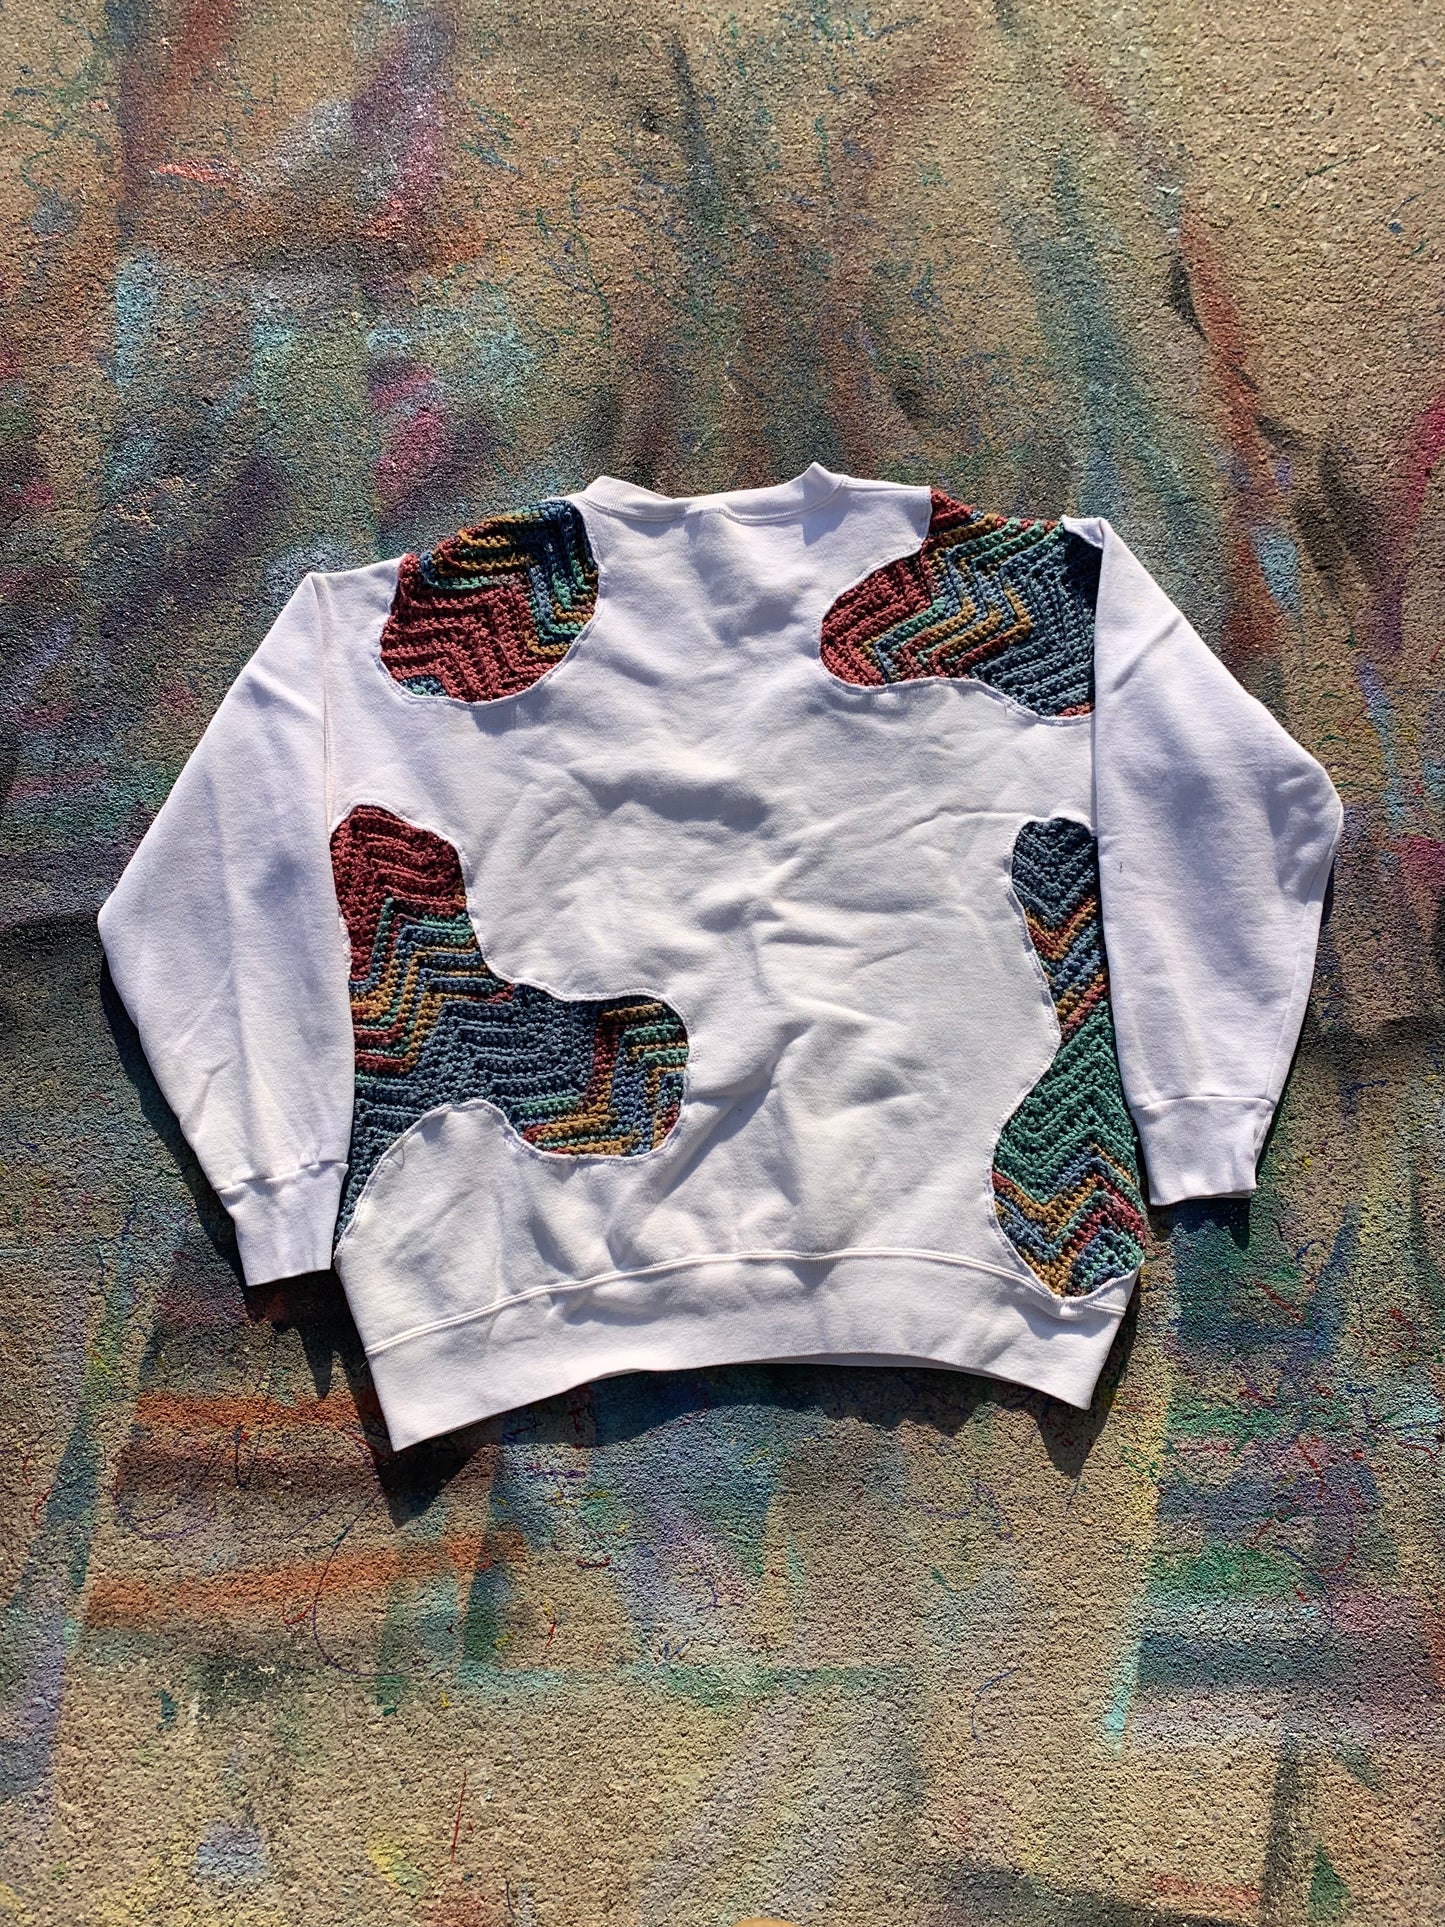 Scab Patches Crewneck (Multicolor/White)- XL